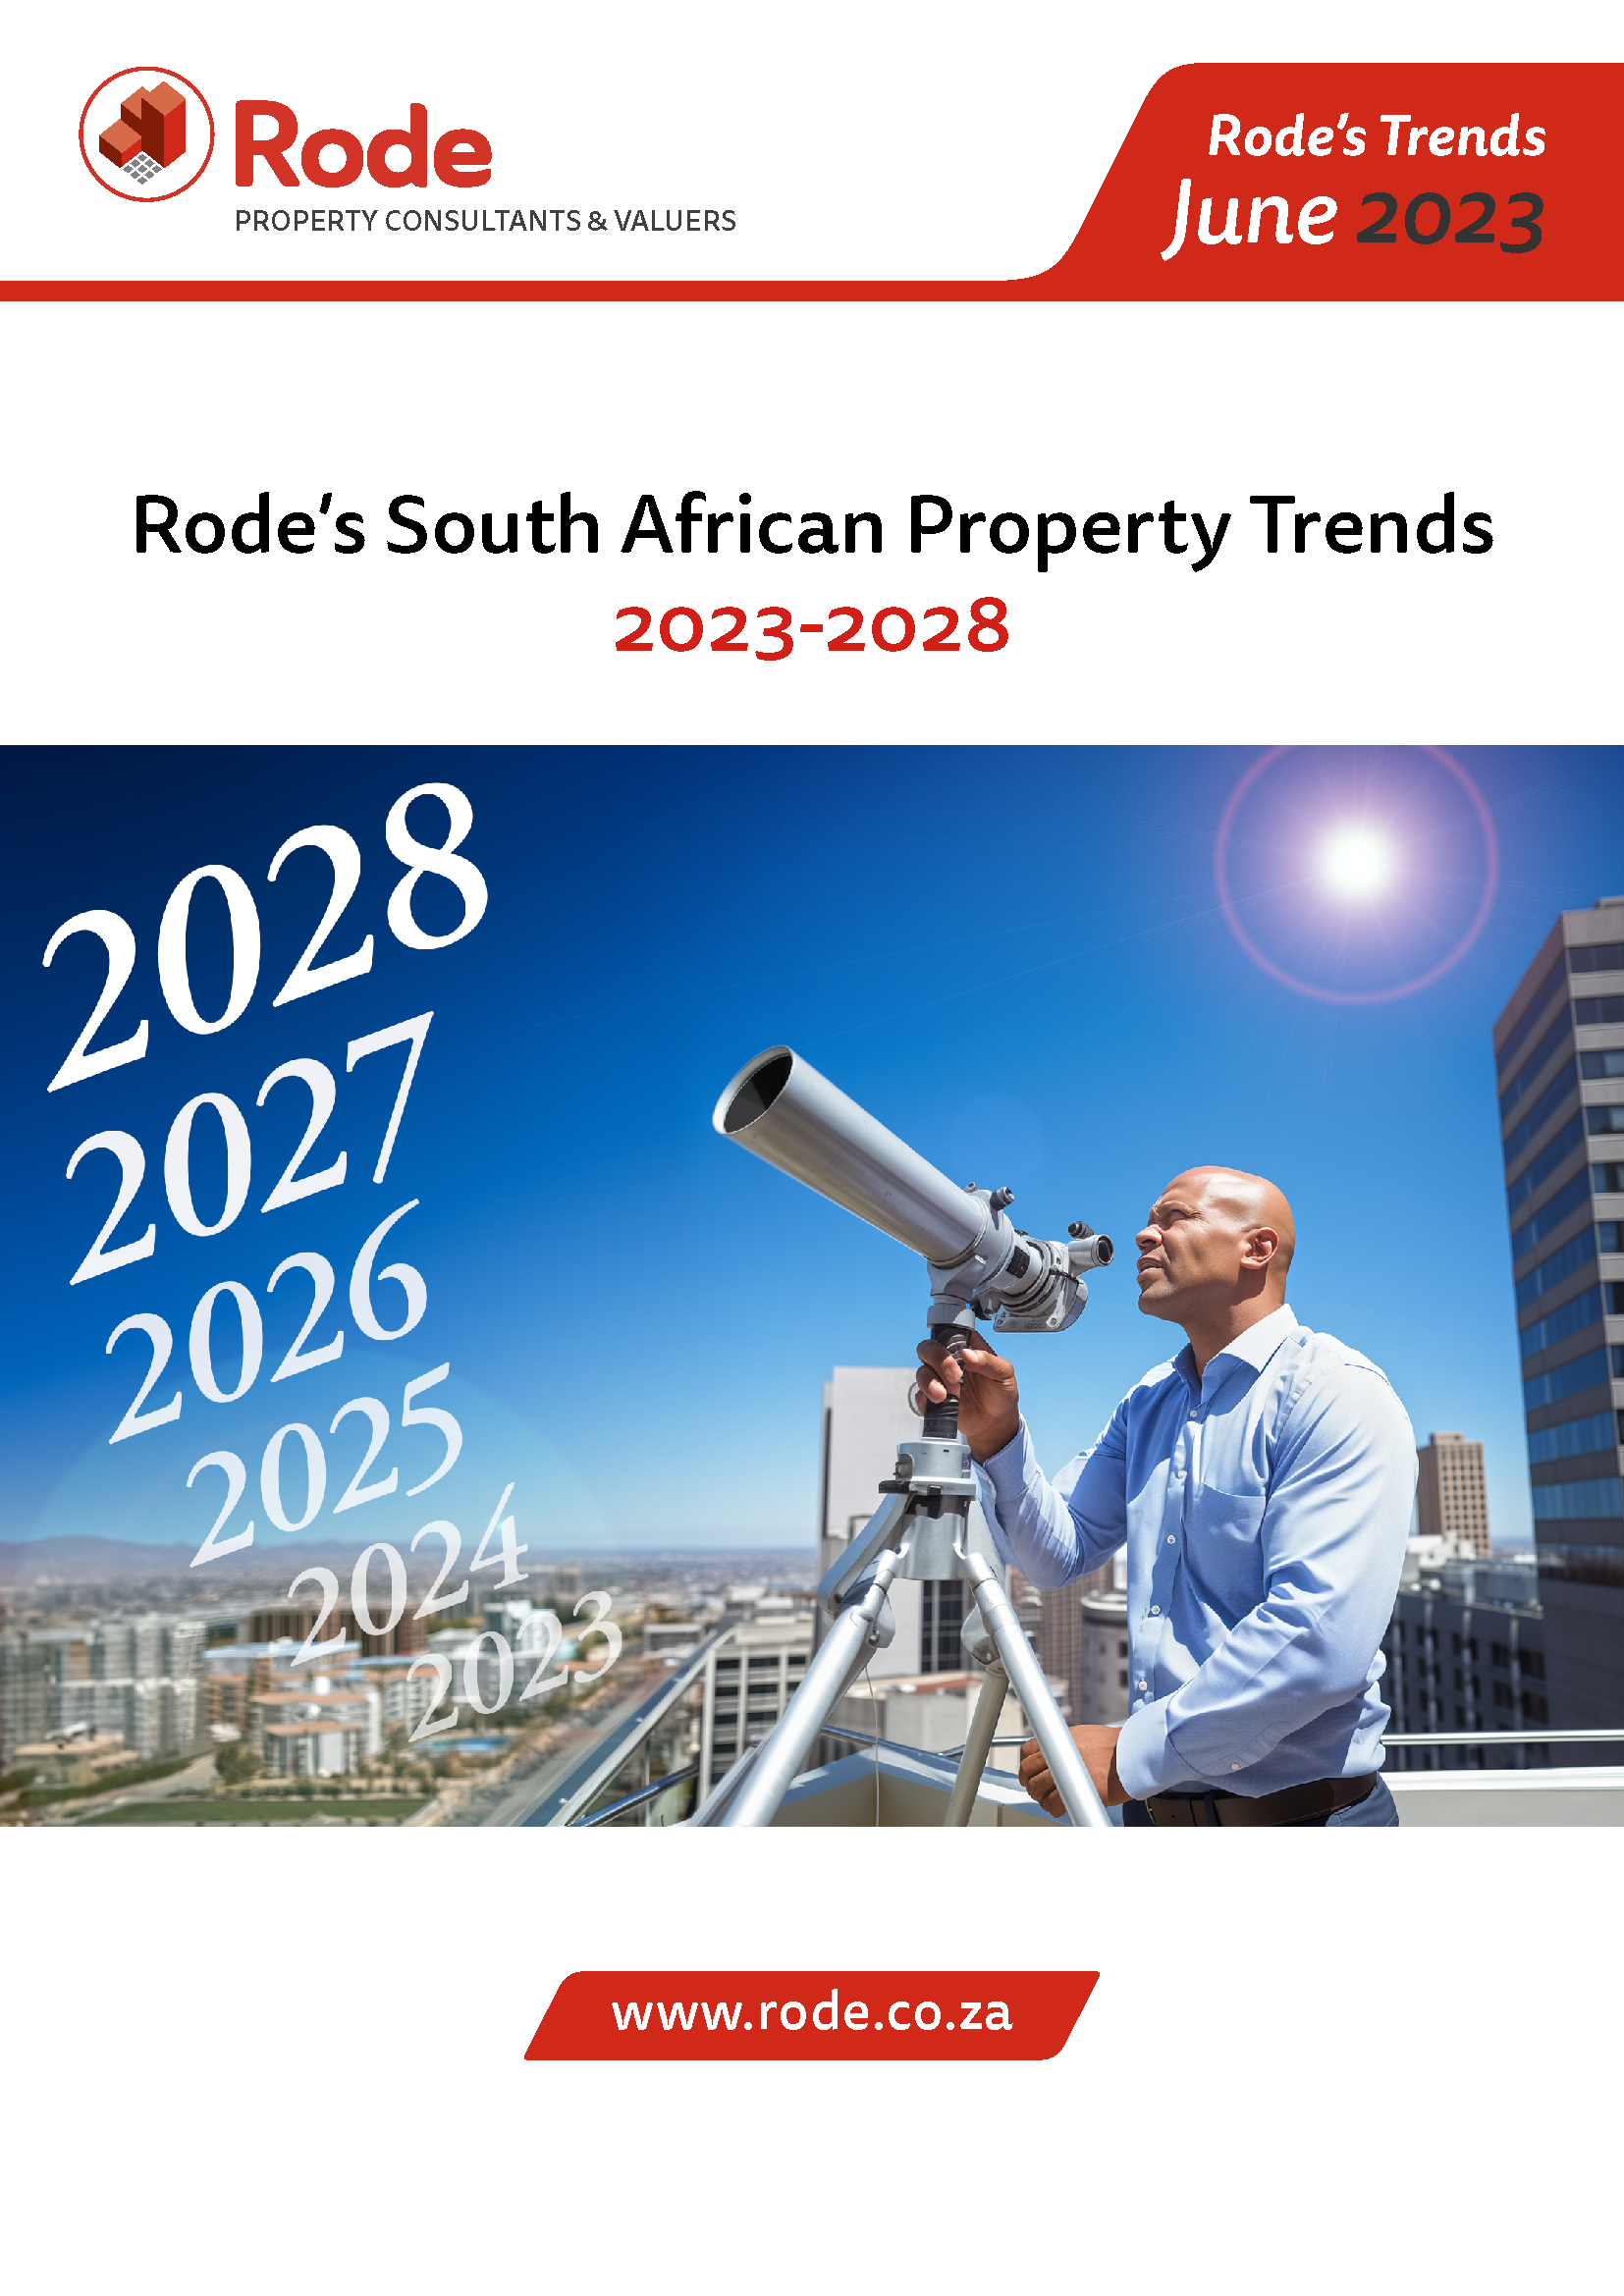 Rode's Trends June 2023